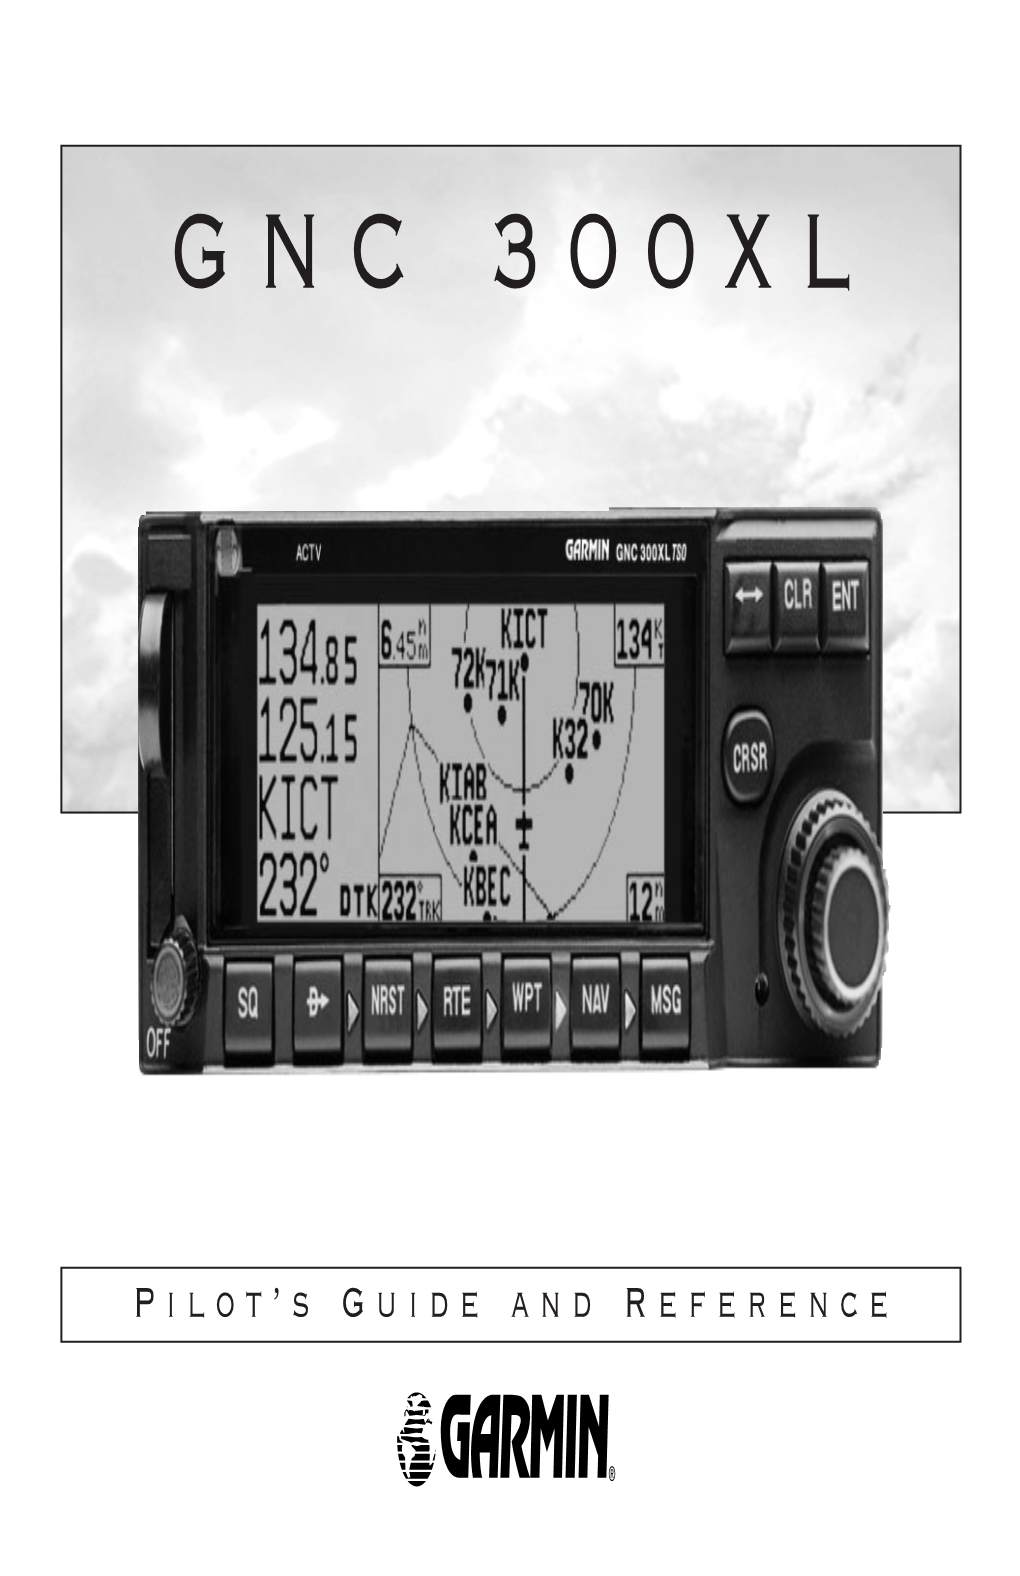 Garmin GNC 300XL Pilot's Guide